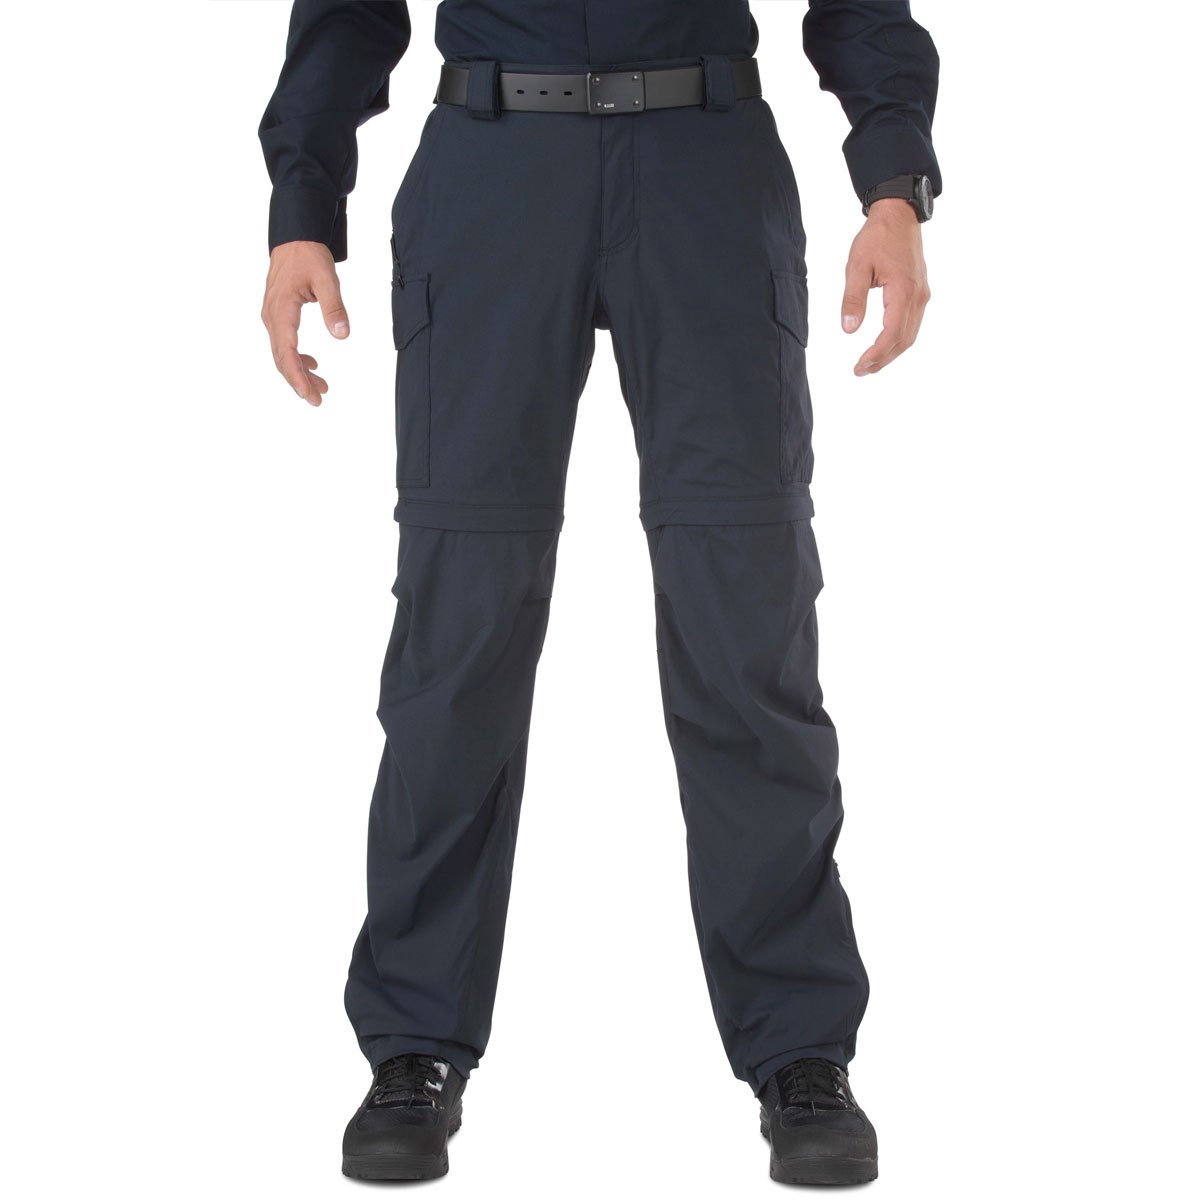 5.11 Tactical Bike Patrol Pant Dark Navy Pants 5.11 Tactical Tactical Gear Supplier Tactical Distributors Australia